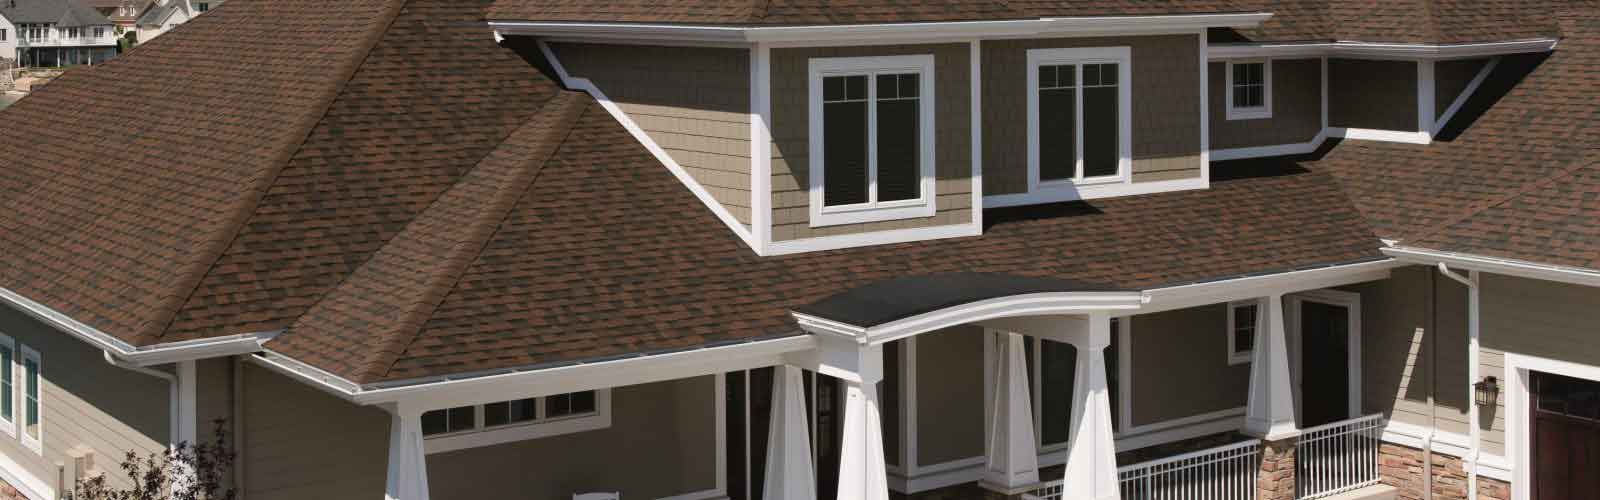 Royal Oak roofing company